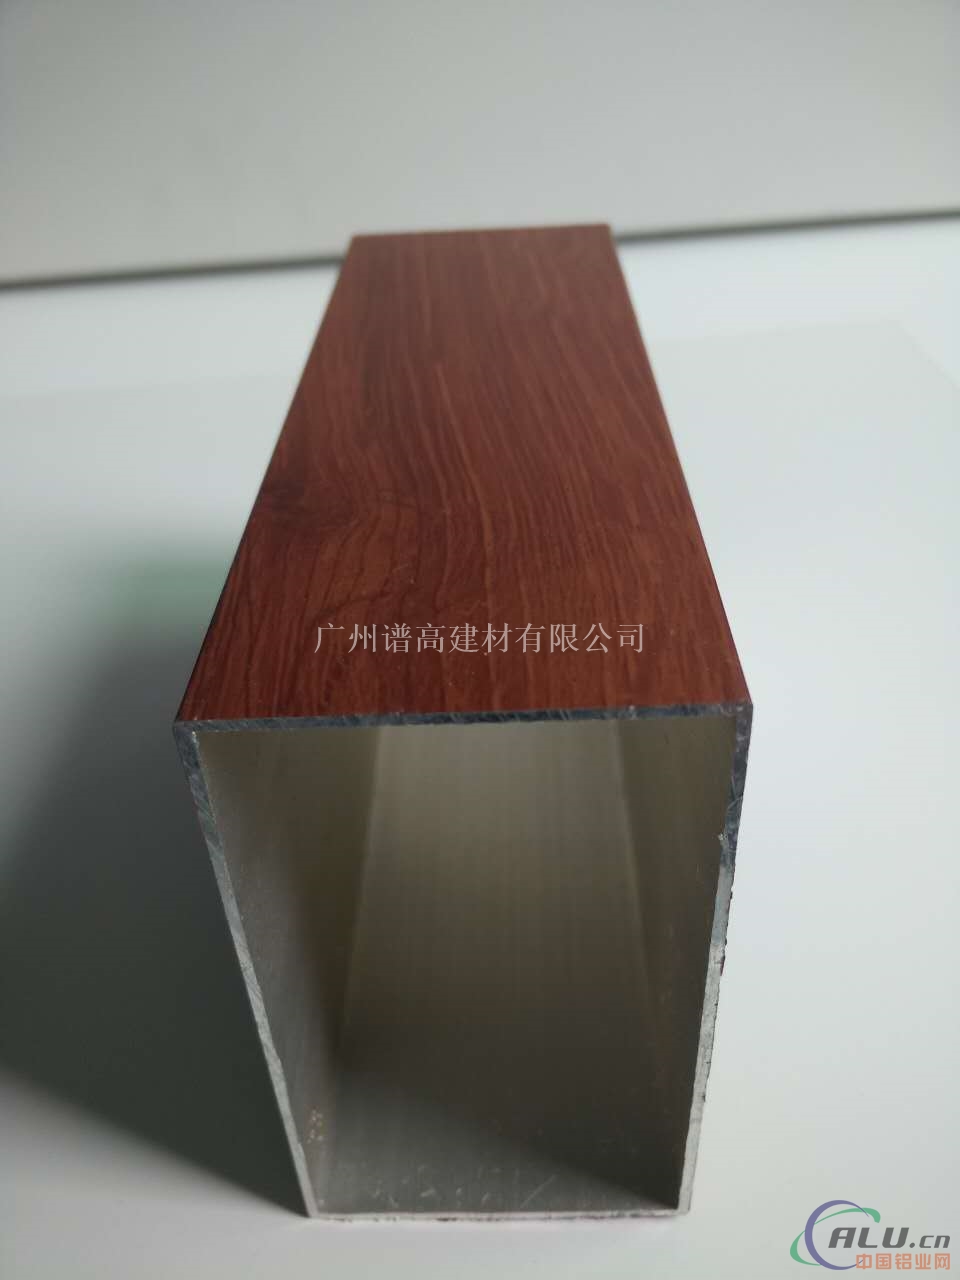 木纹铝型材方通生产厂家成批出售价出售 